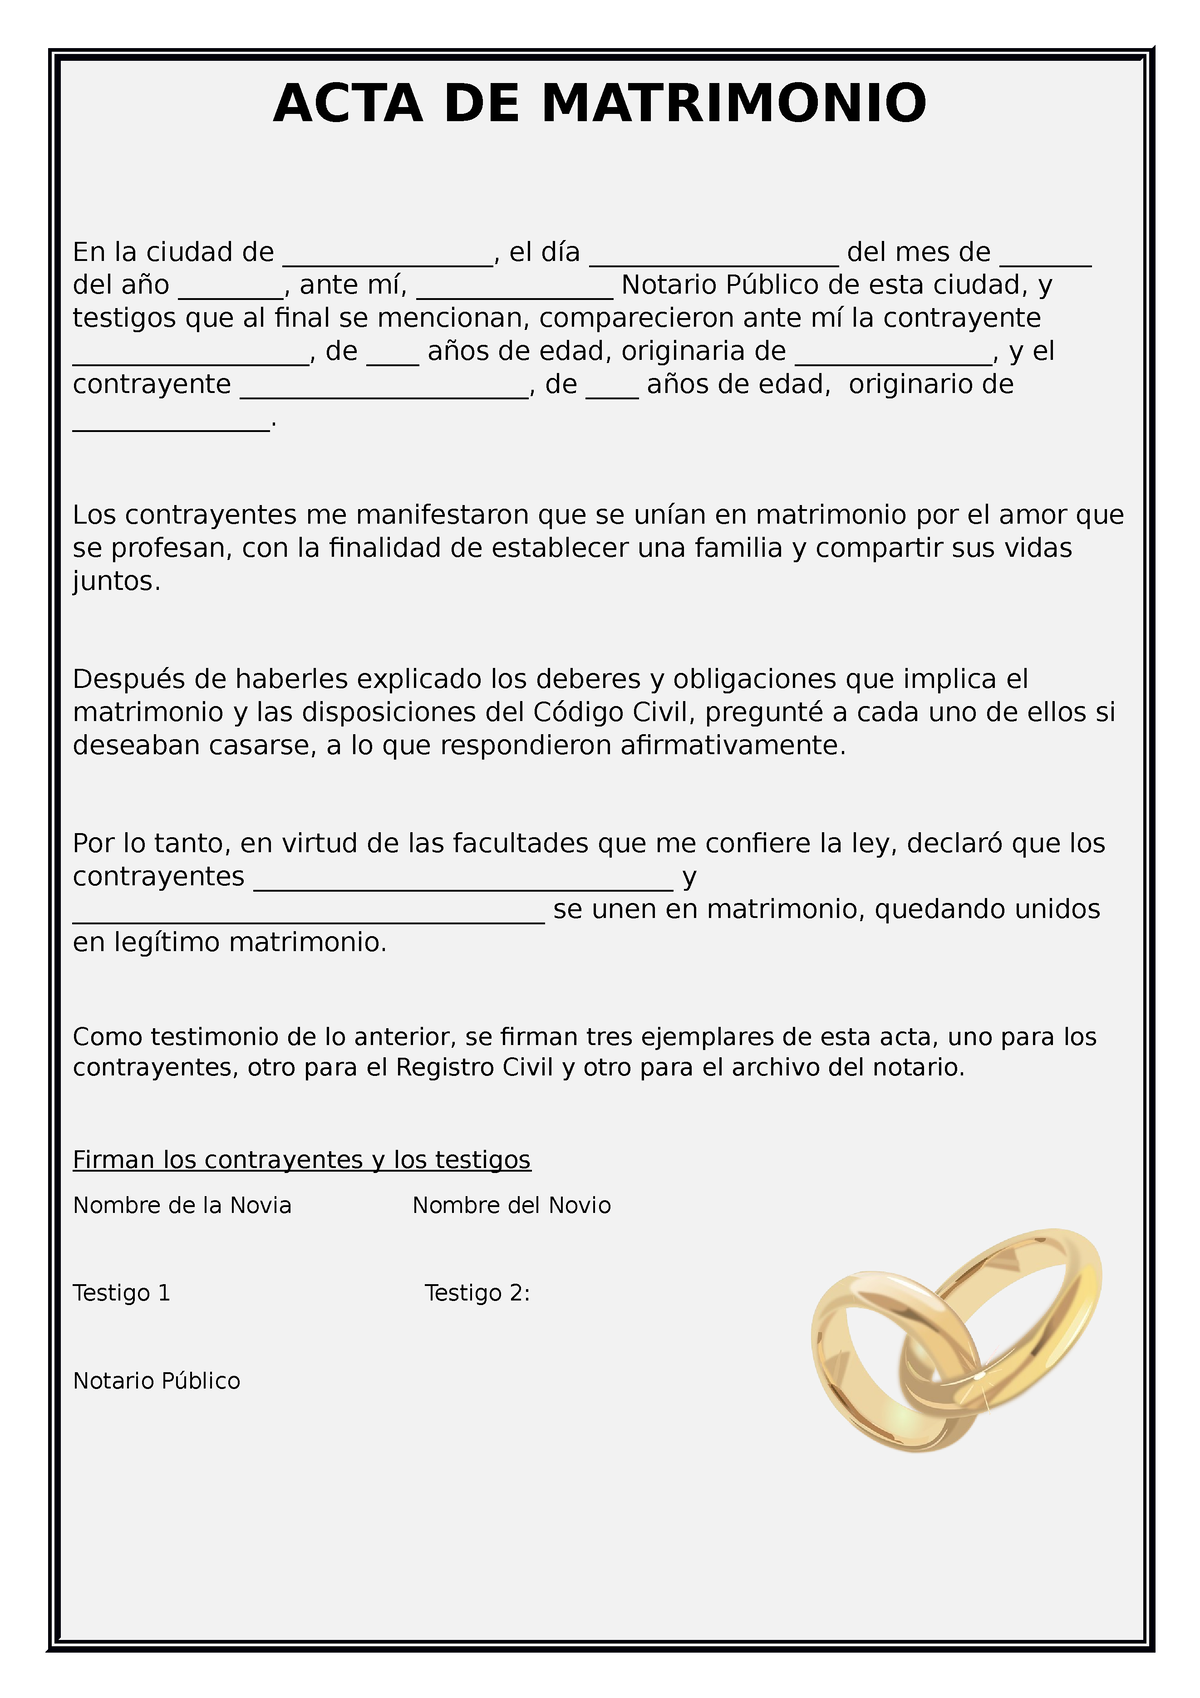 Acta De Matrimonio Falsa Online Acta De Matrimonio En La Ciudad De El Día 3566